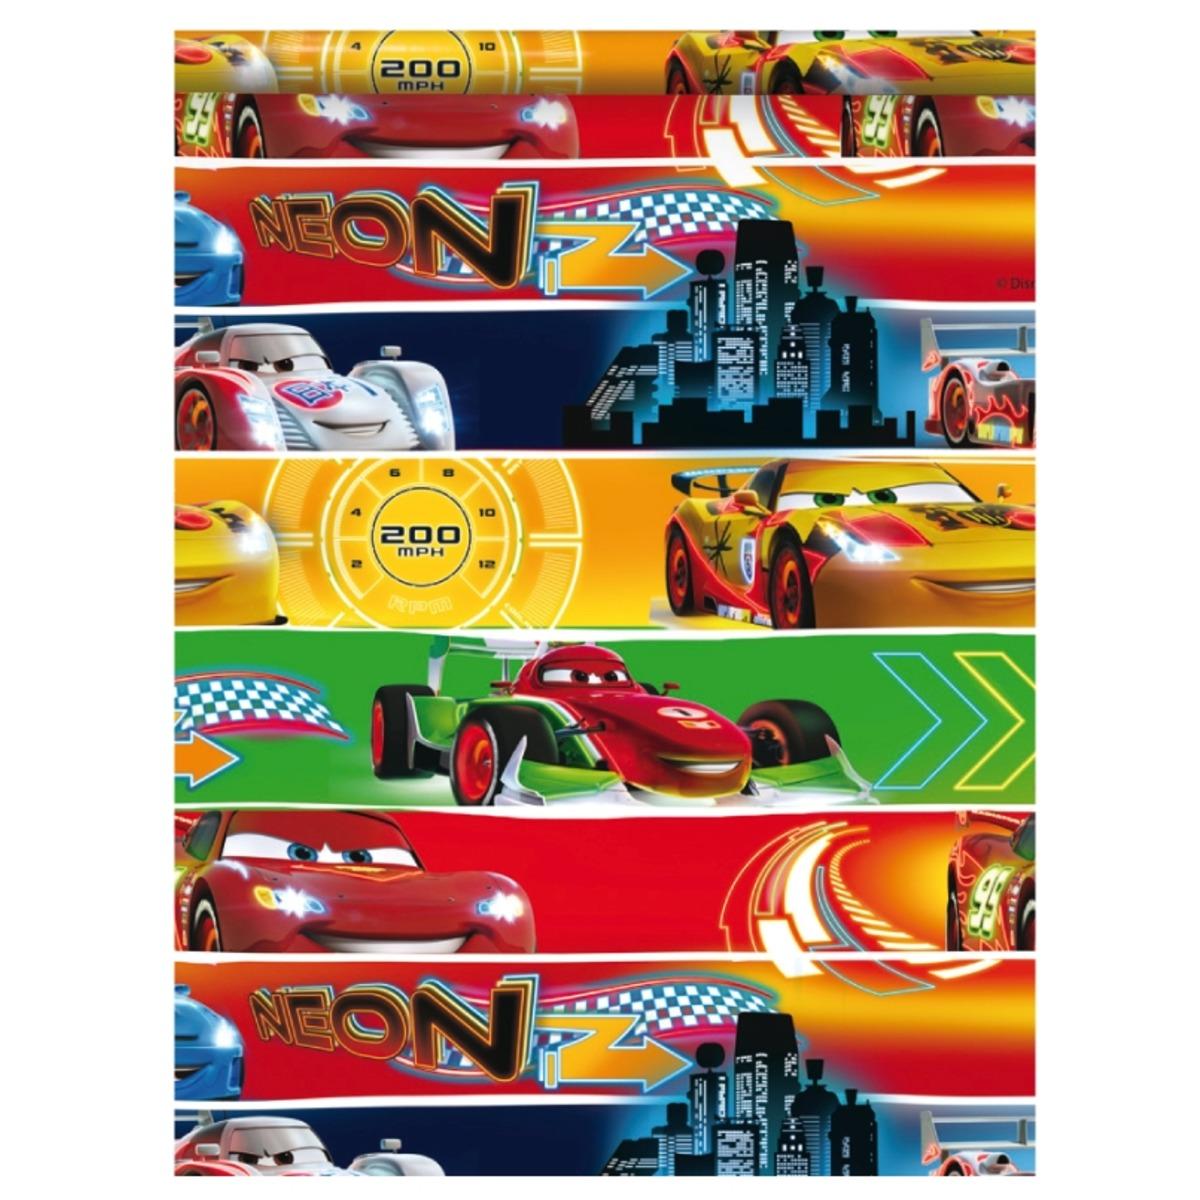 Rouleau de papier cadeau thème Disney Cars - 0,7 x 2 m - Différents modèles